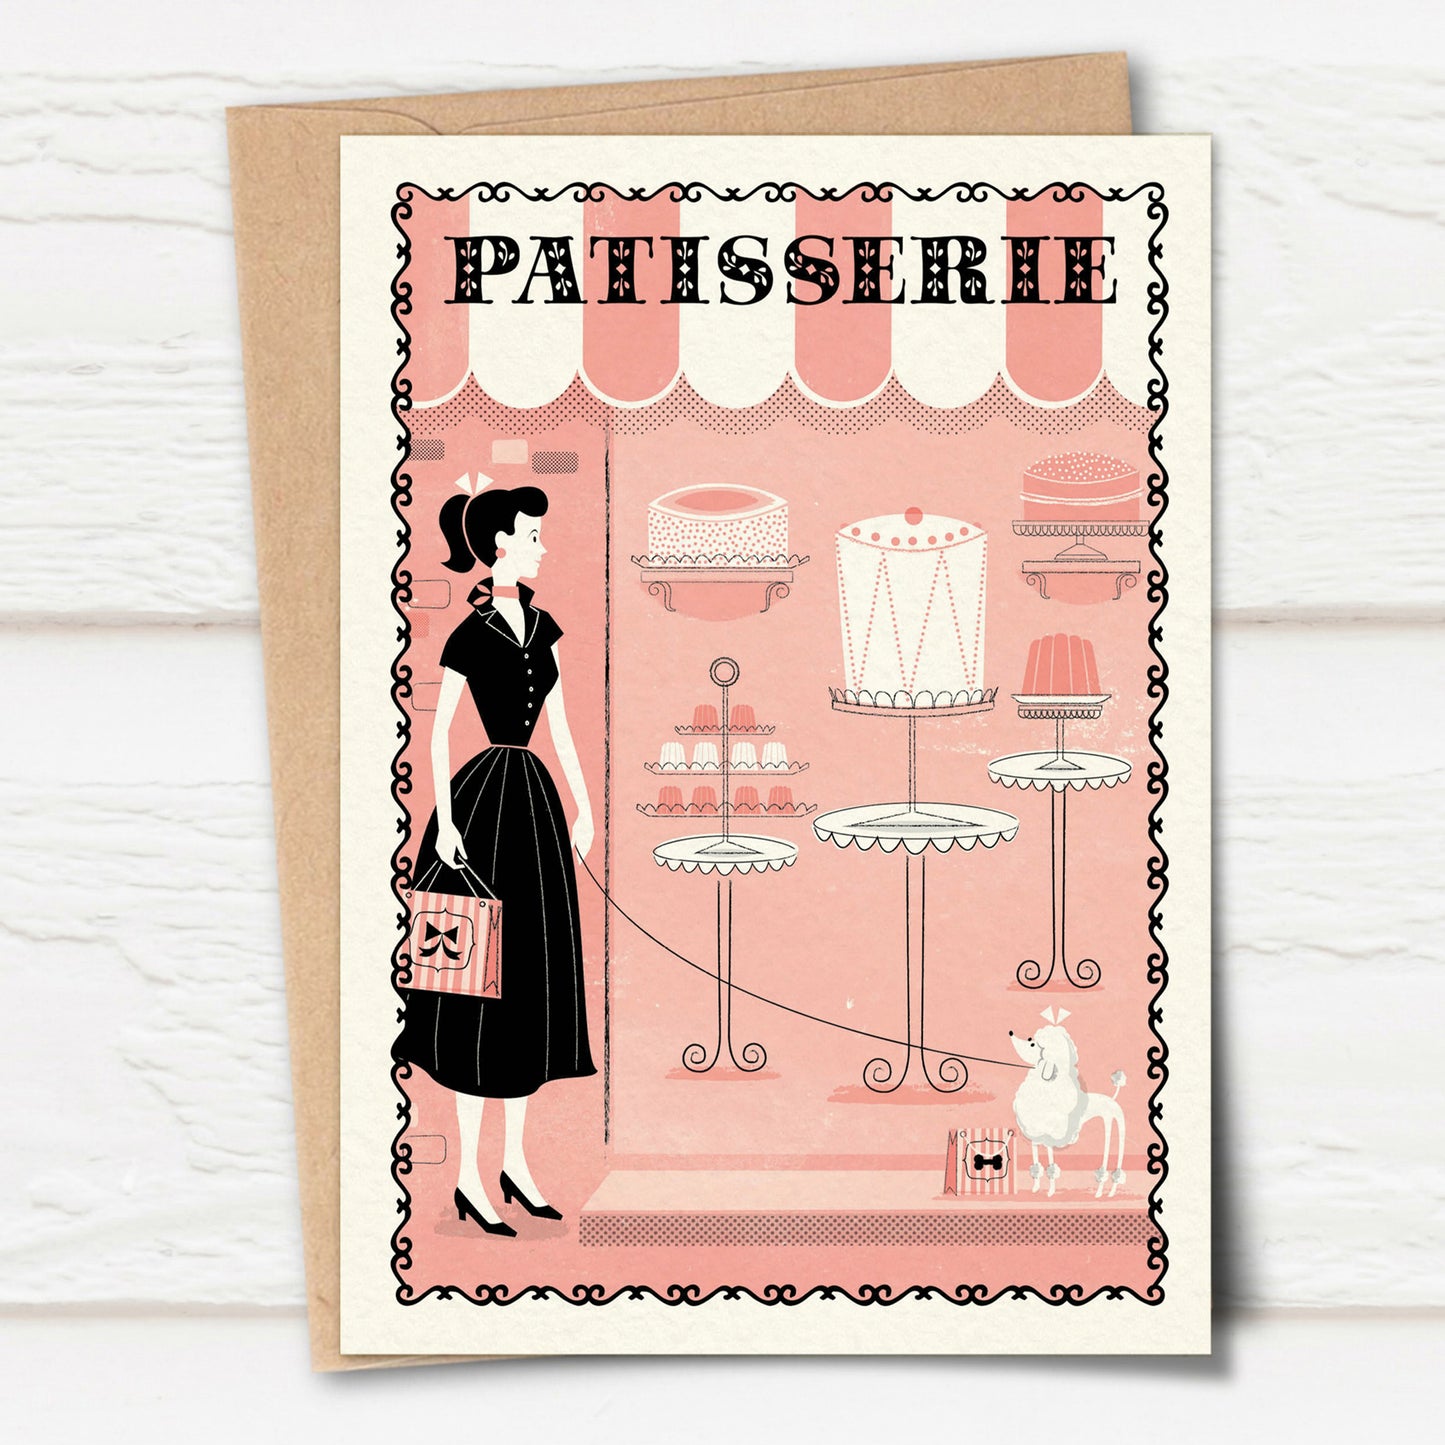 Paris Shoppers Card: Patisserie